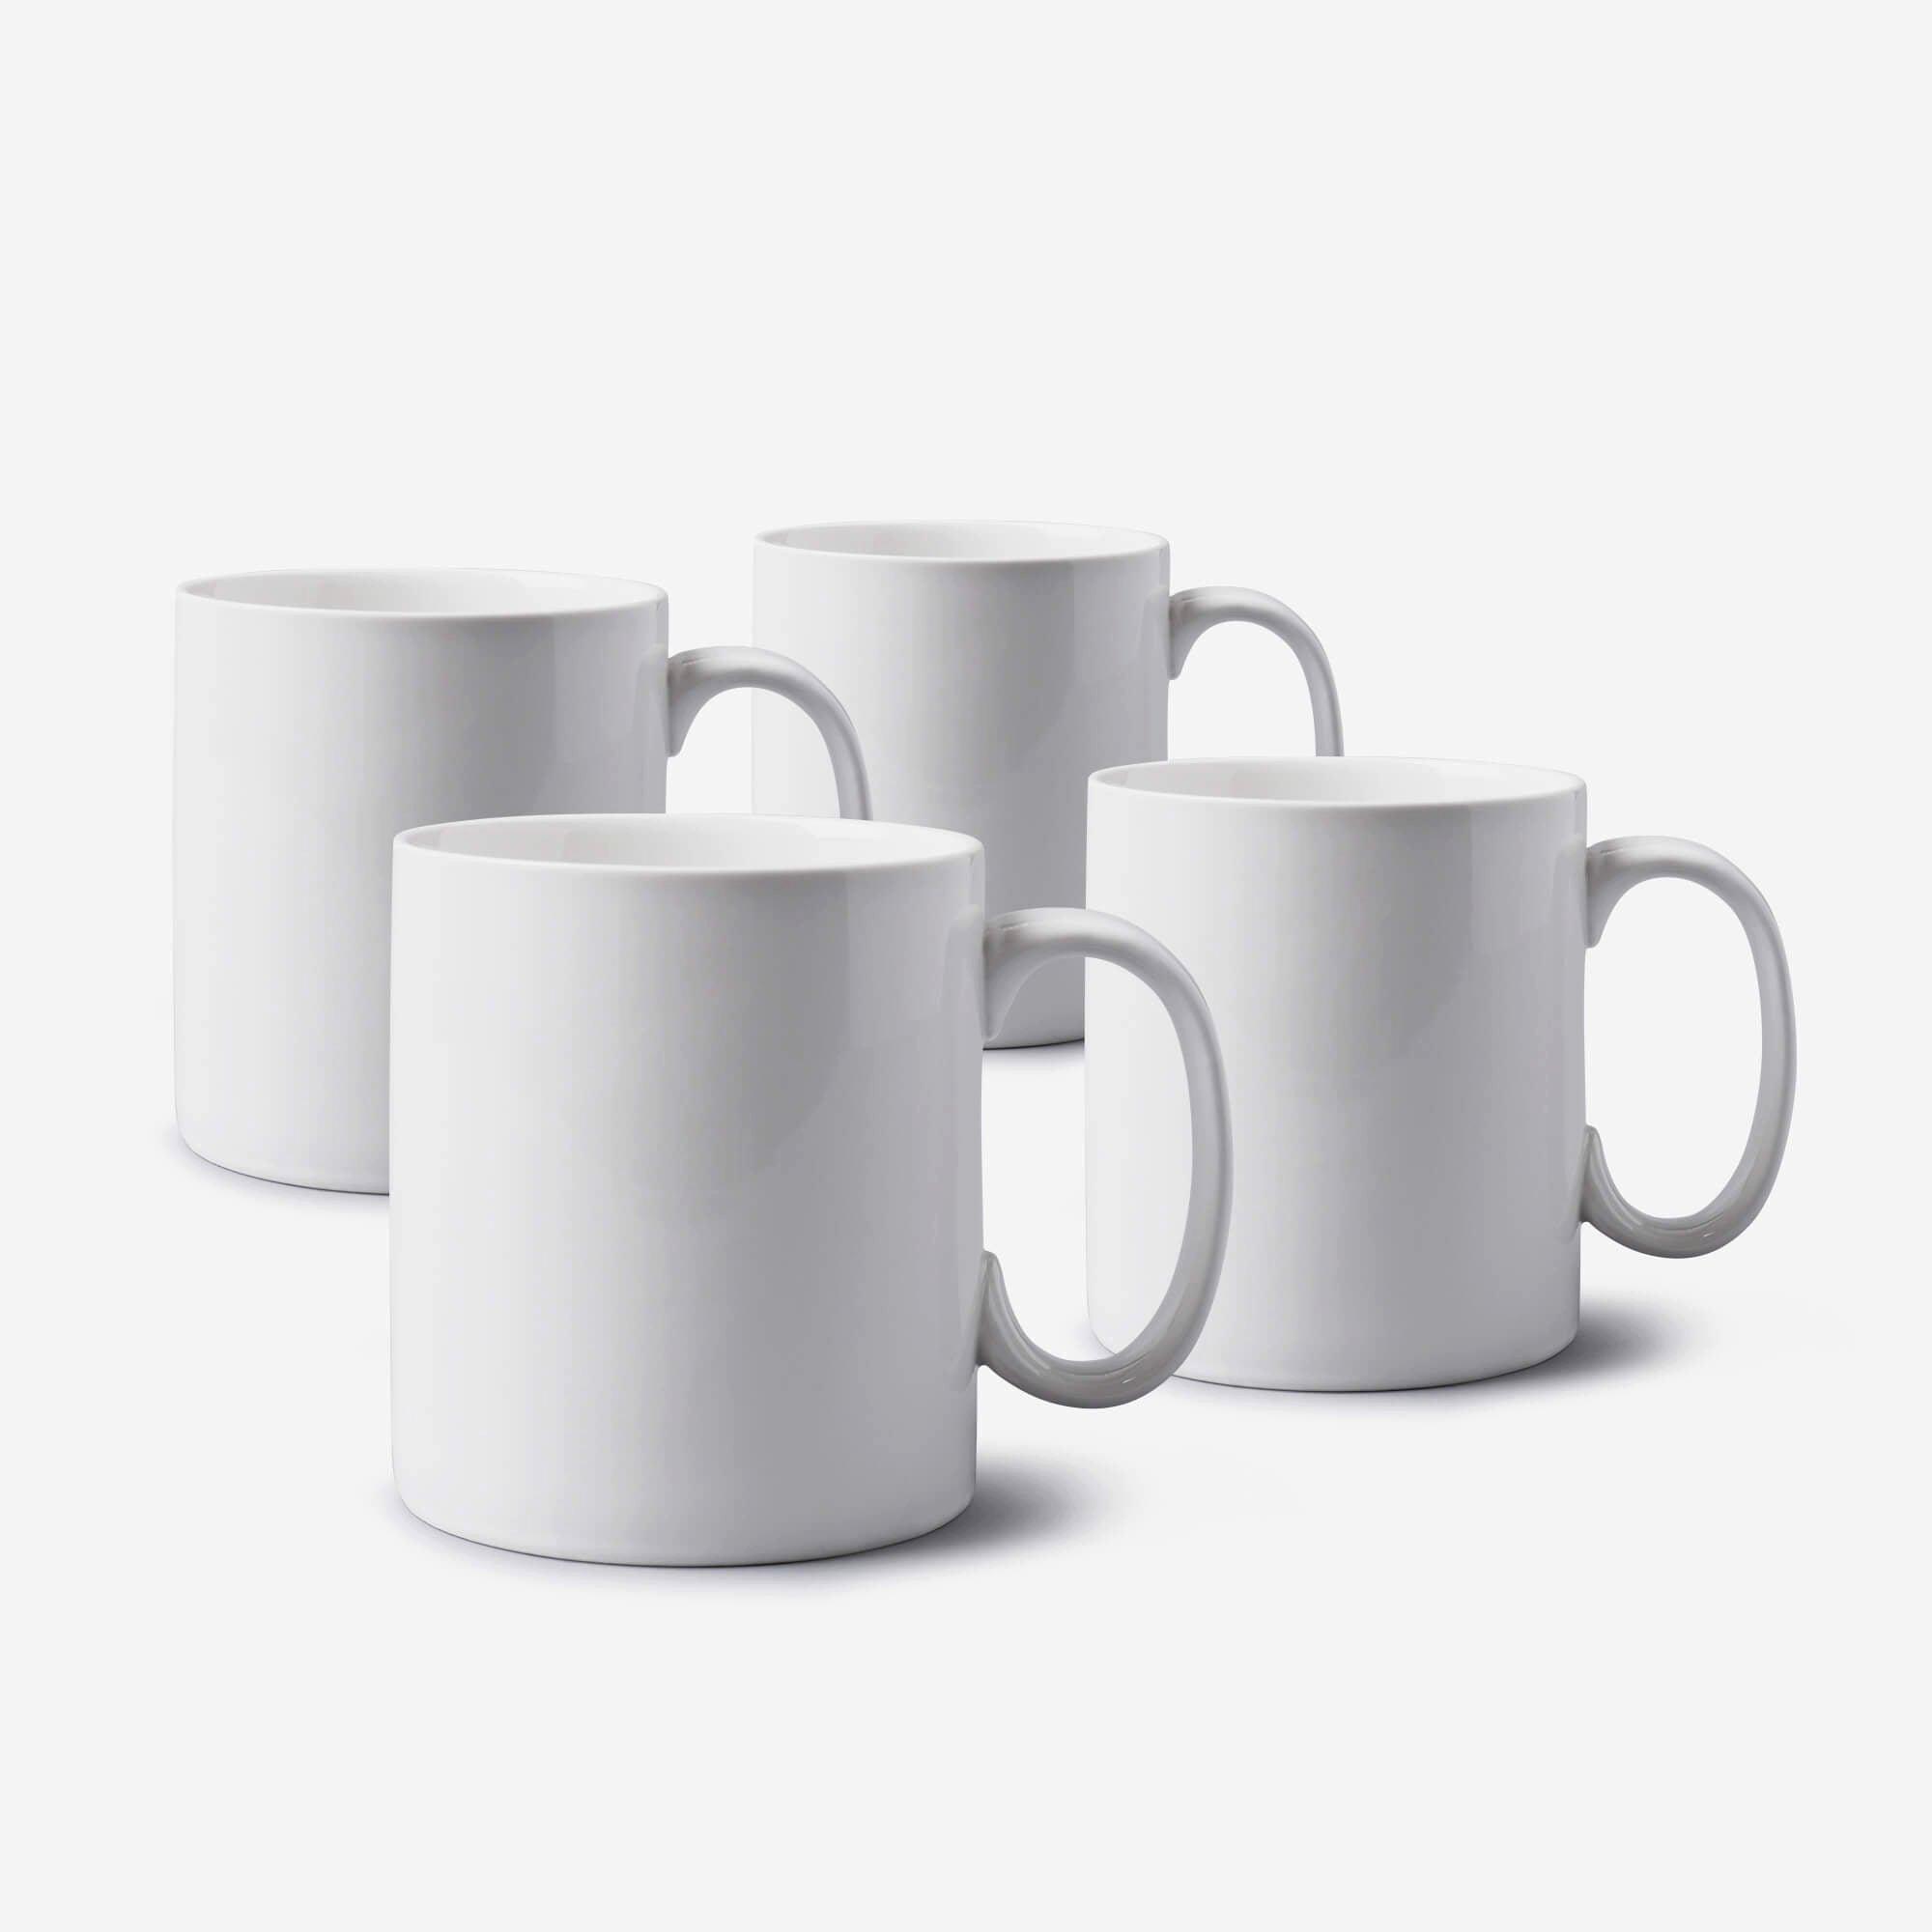 Porcelain Extra Large Mug 1.2 Pint Set of 4